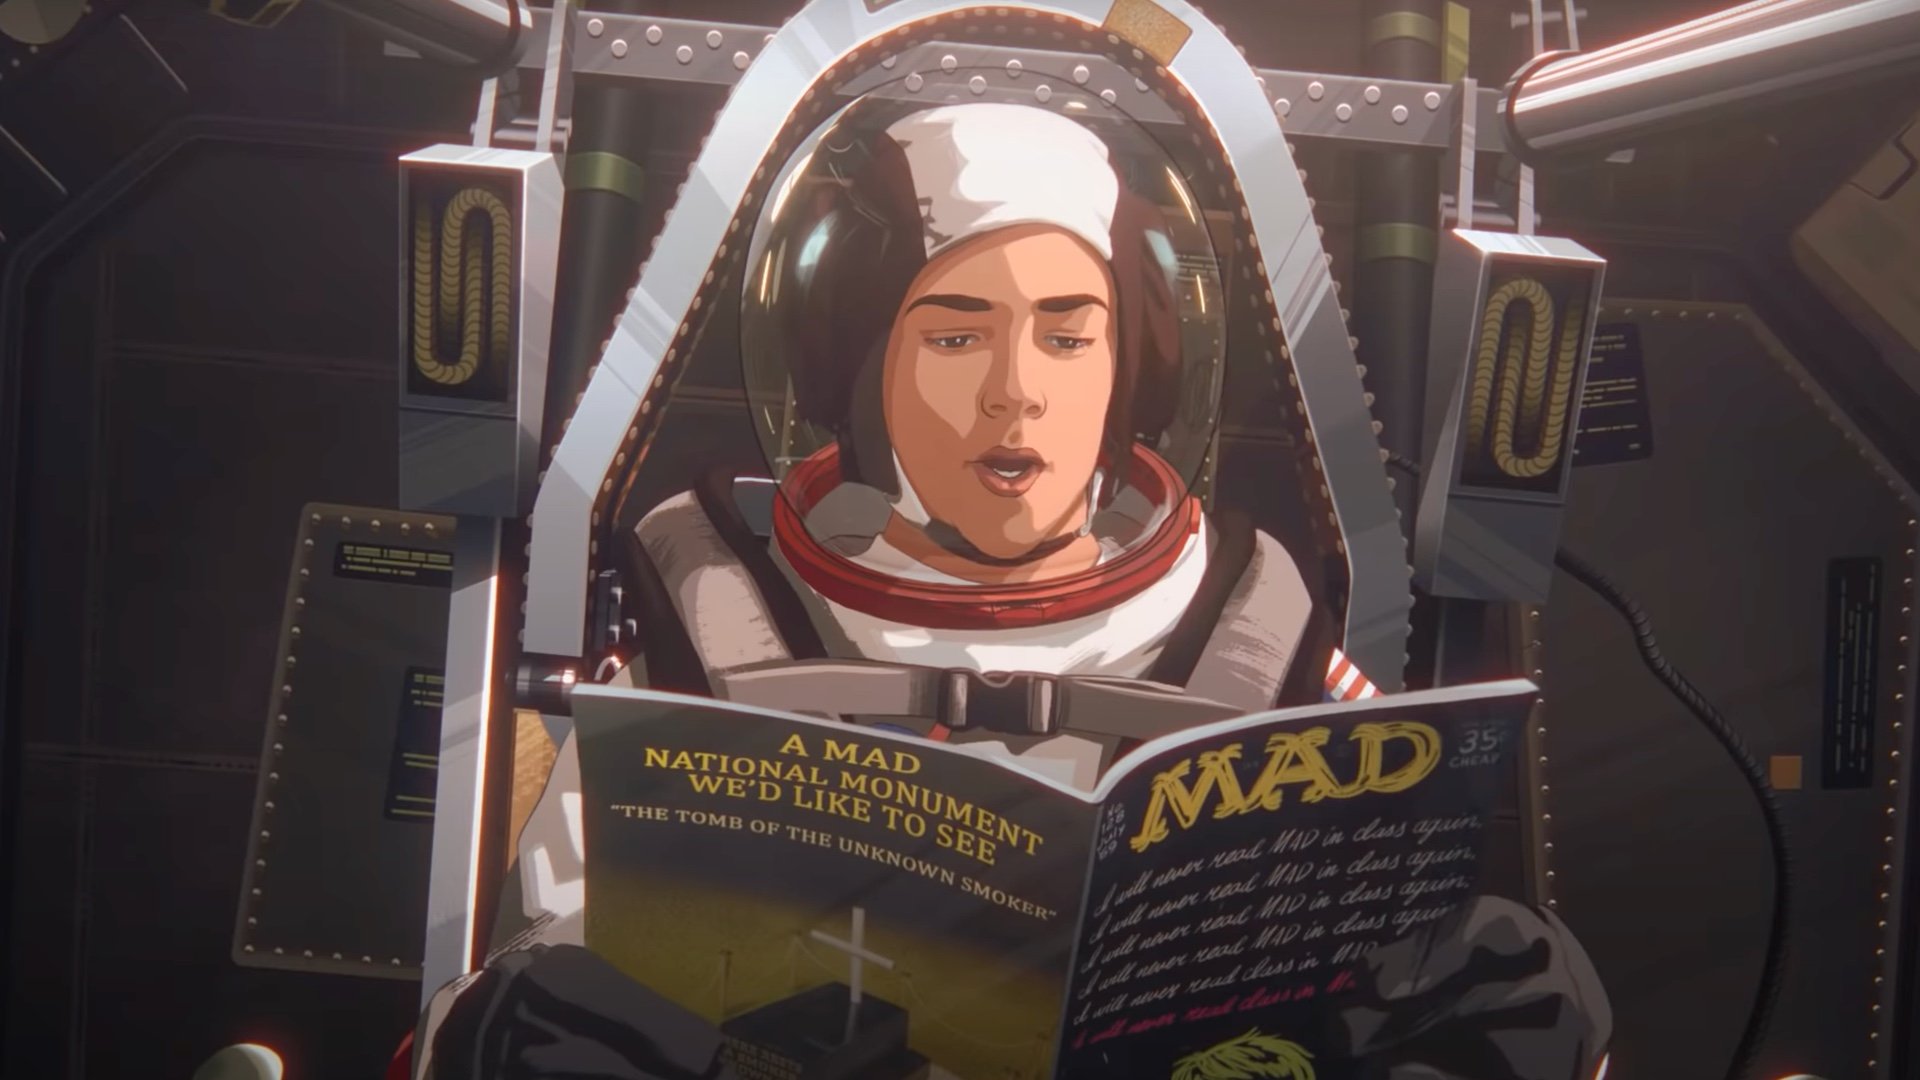 Cena do filme em animação Apollo 10 e Meio. Nela, o personagem Stan, uma criança branca, está dentro de um foguete enquanto lê uma revista Mad. Stan veste uma roupa típica de astronauta americano e ao seu fundo estão algumas ferragens que compõem o banco do foguete.